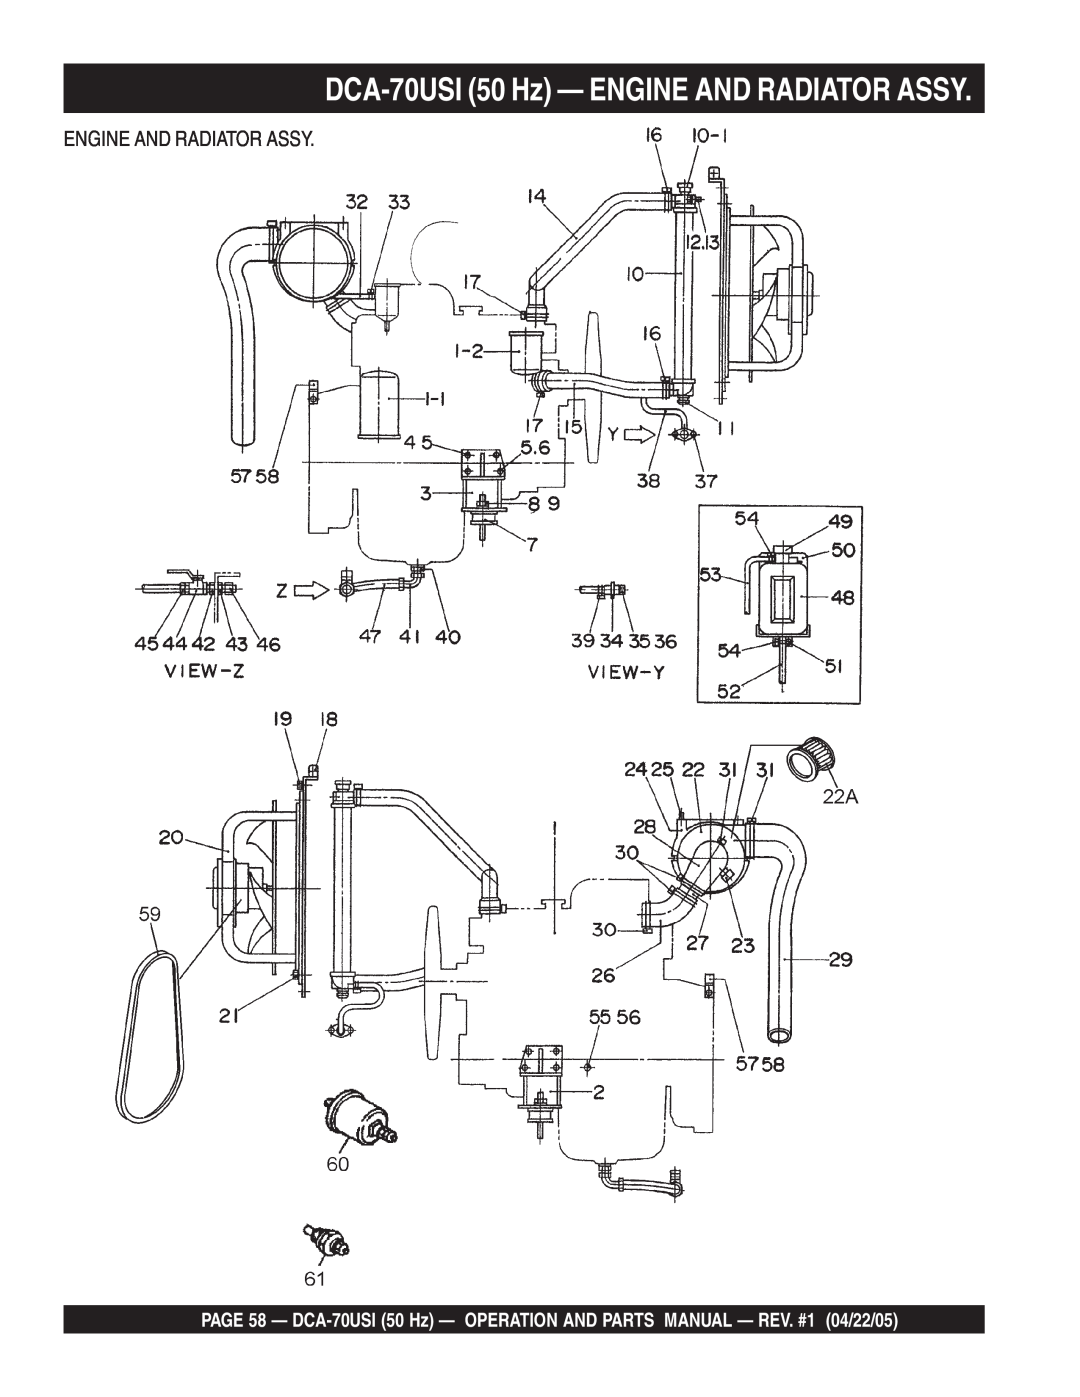 Multiquip operation manual DCA-70USI50 Hz — ENGINE AND RADIATOR ASSY, Engine And Radiator Assy 